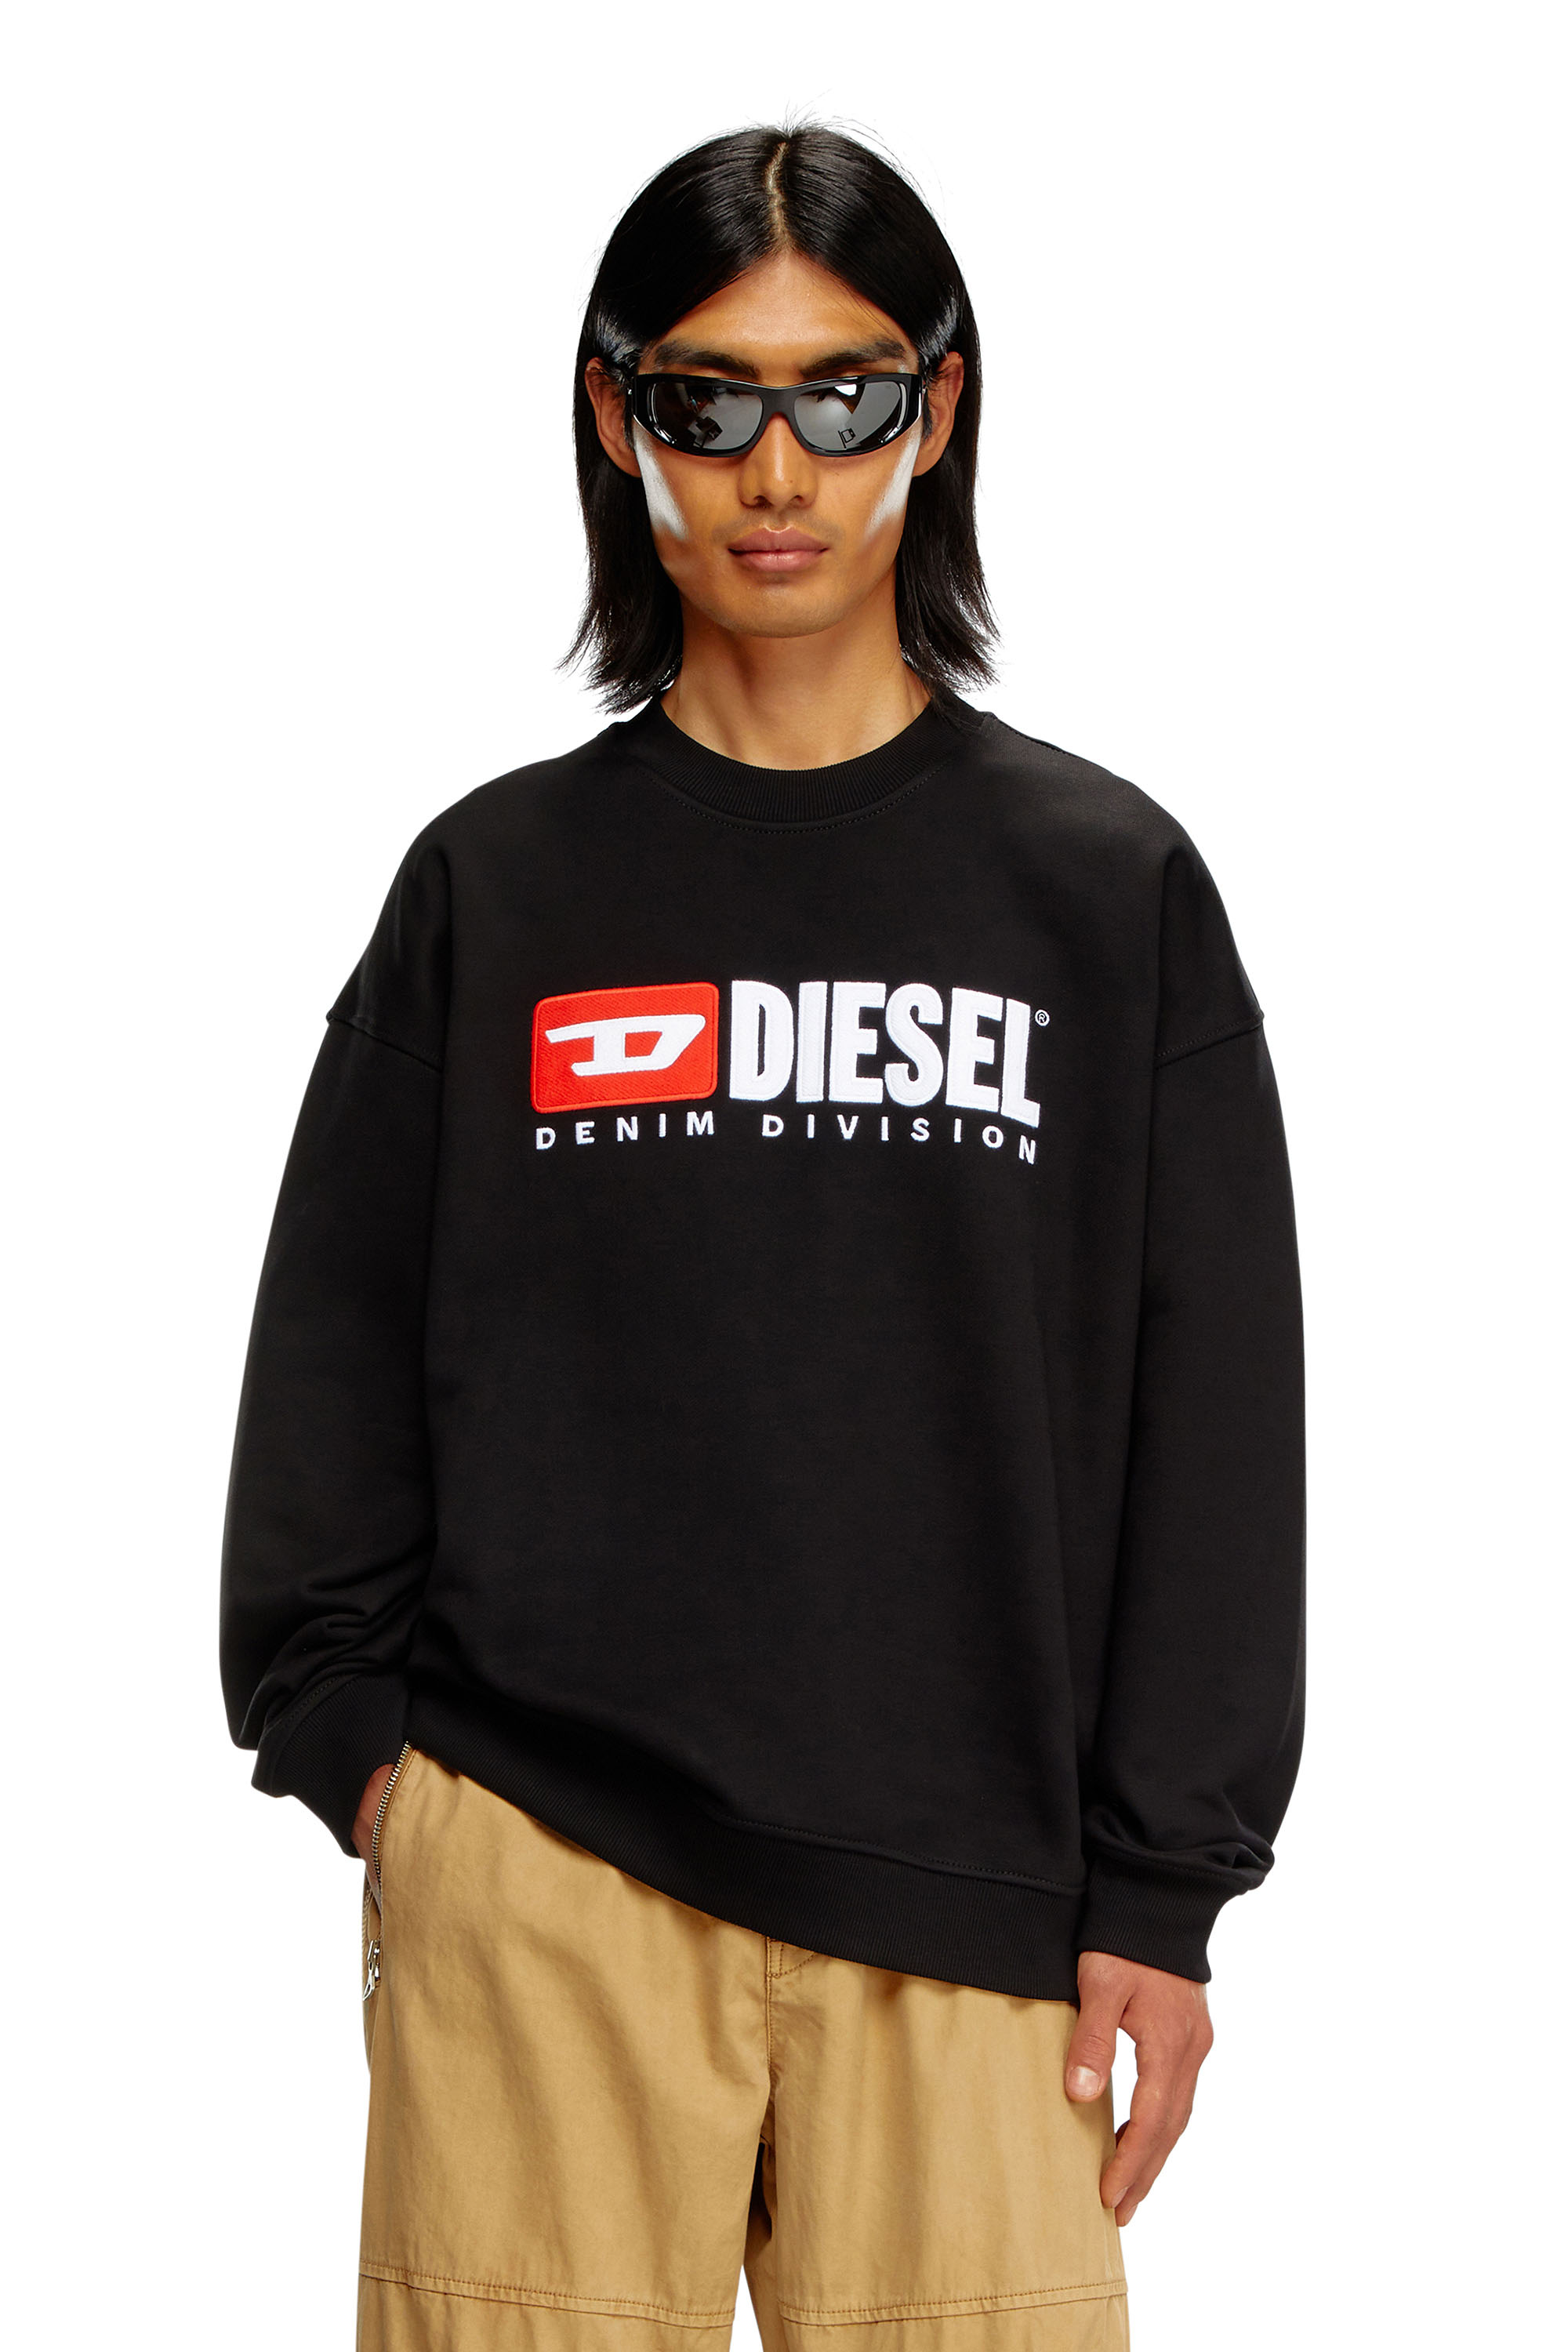 Diesel - S-BOXT-DIV, Herren Sweatshirt mit Denim Division-Logo in Schwarz - Image 1